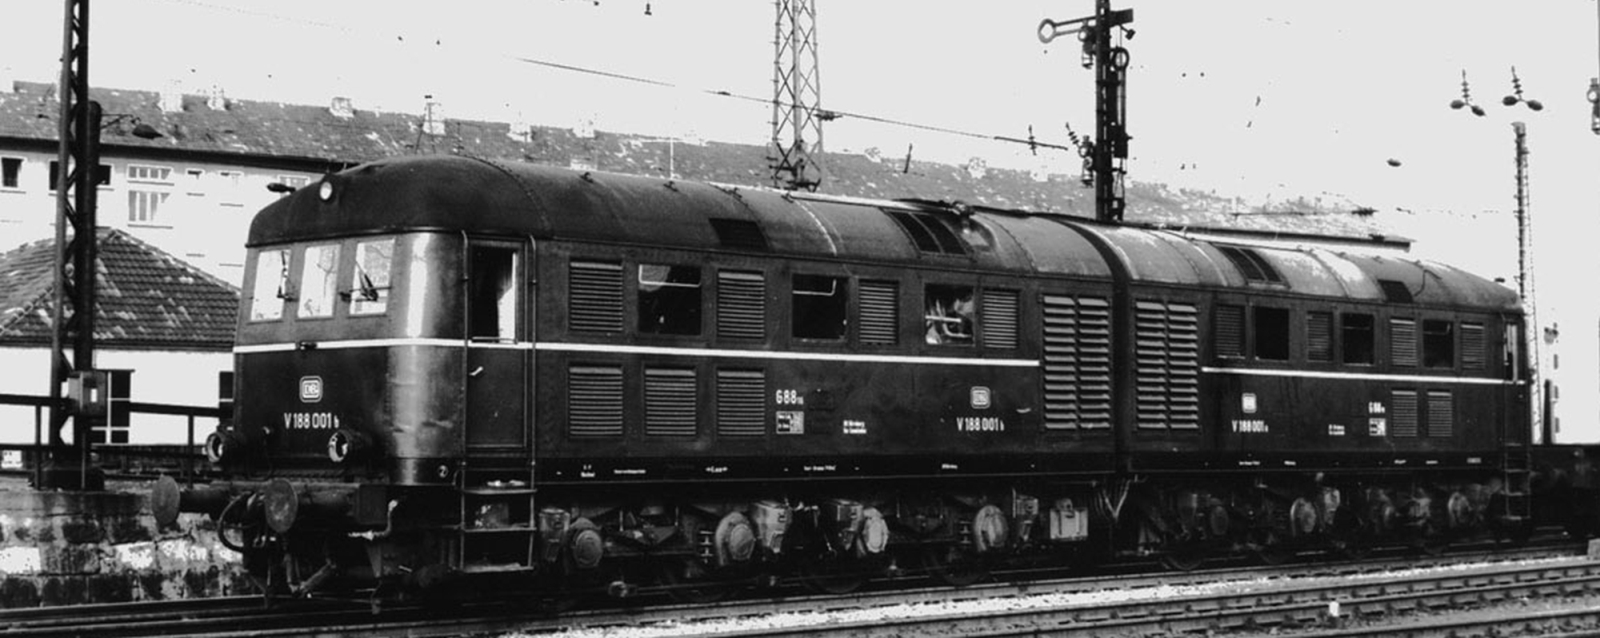 V 188 001 in July 1967 in Bamberg